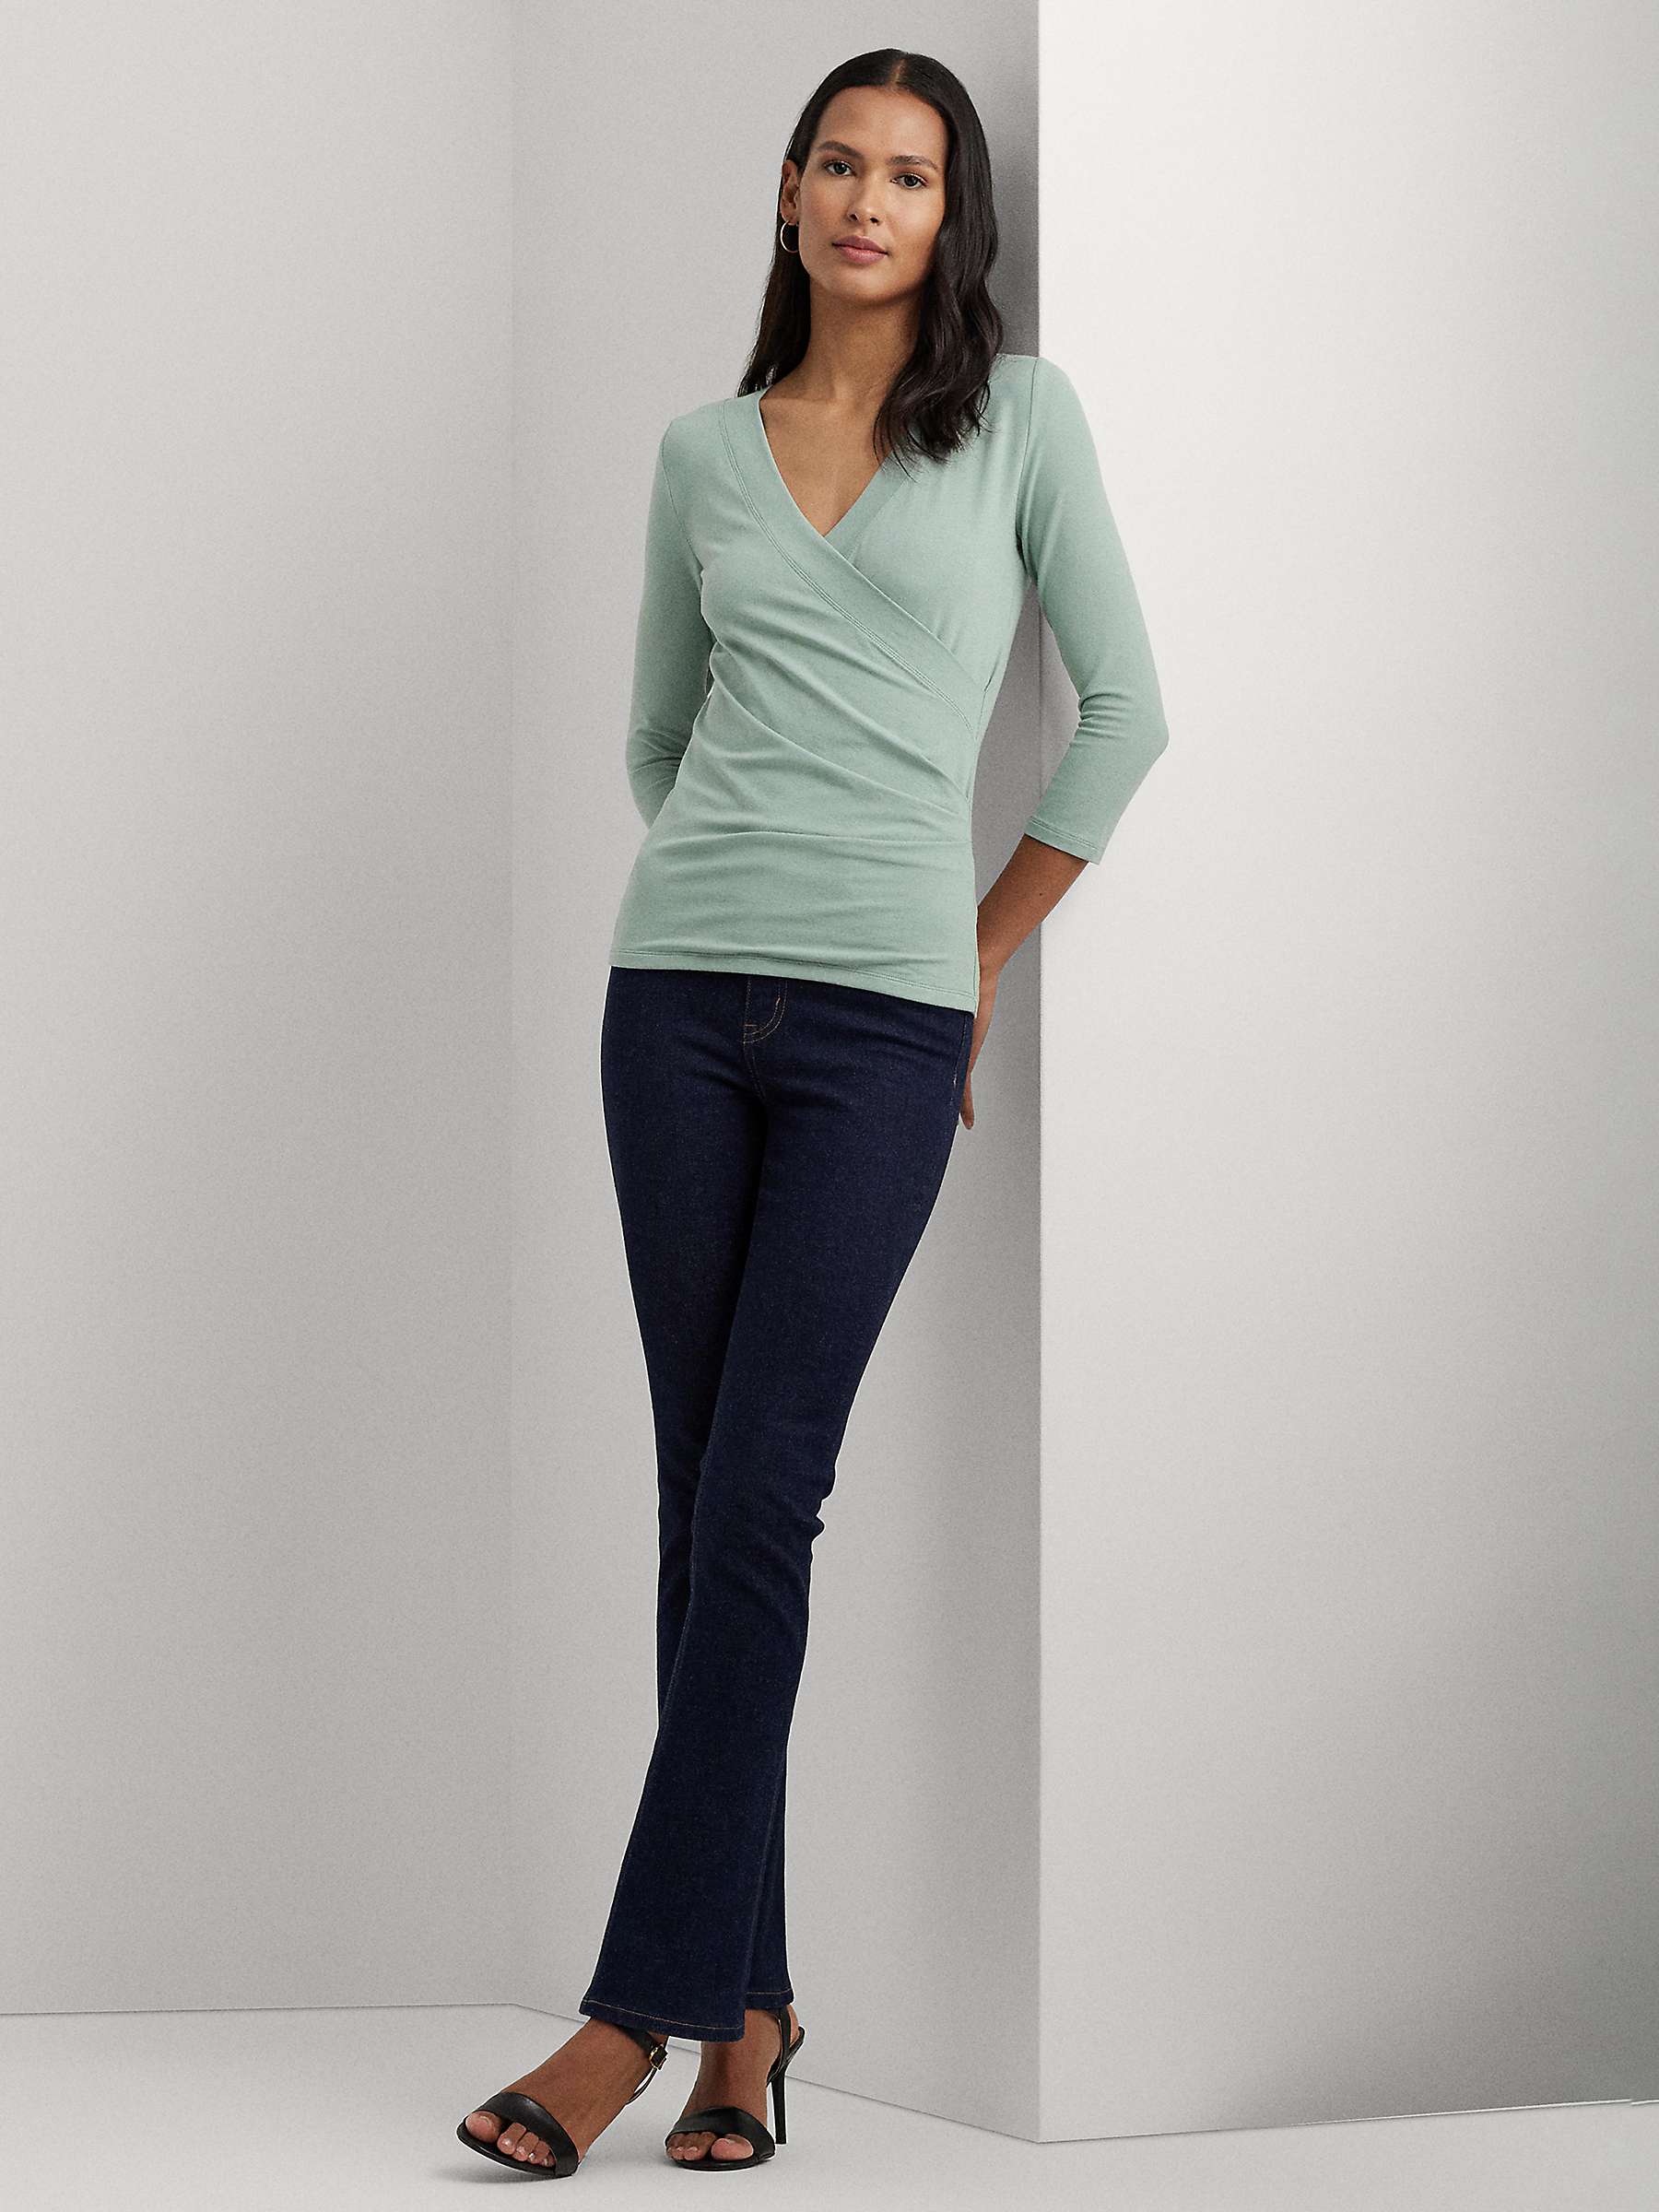 Buy Lauren Ralph Lauren  Alayja 3/4 Sleeve Wrap Jersey Top Online at johnlewis.com